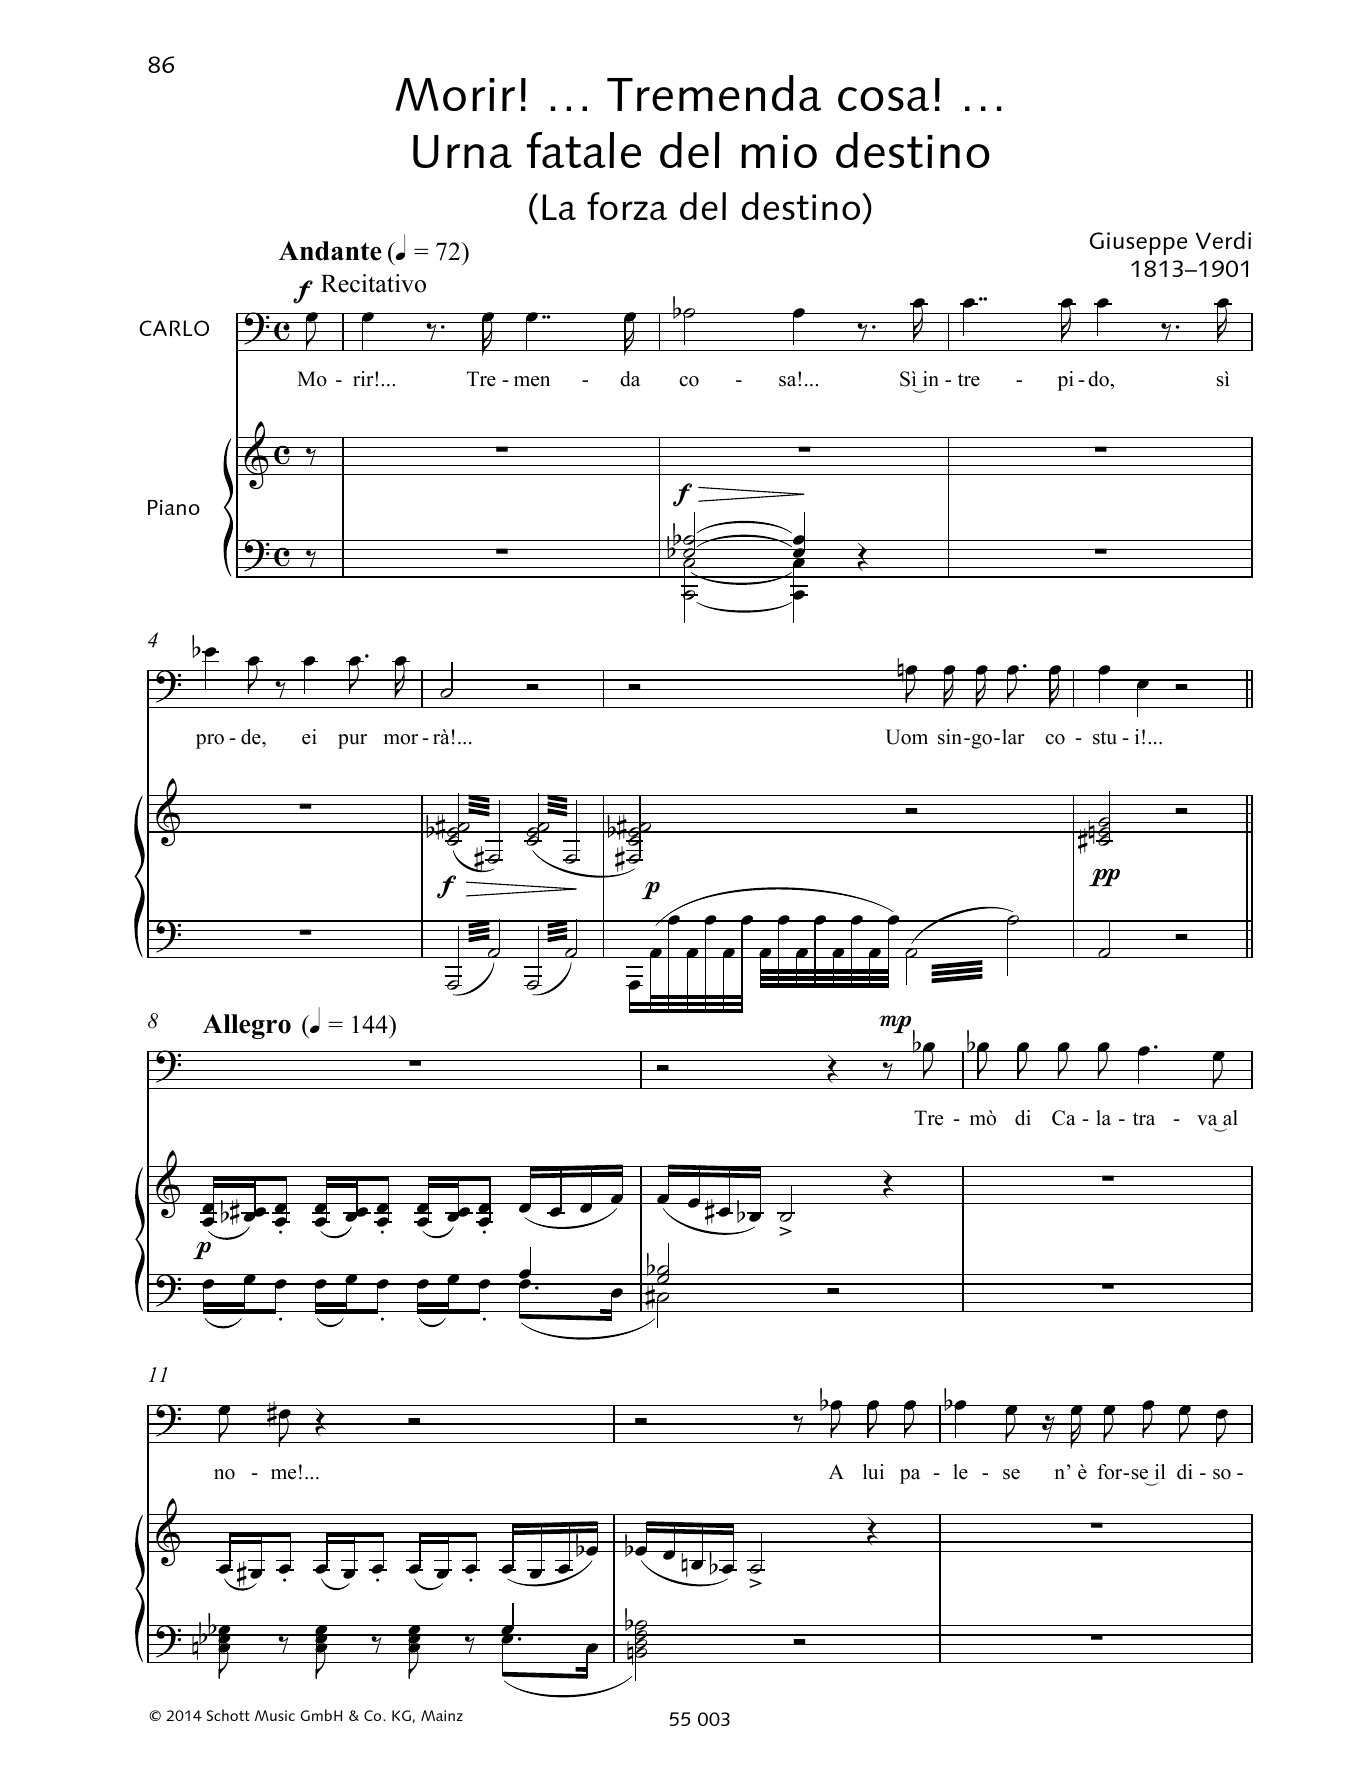 Francesca Licciarda Morir! ... Tremende cosa! ... Urna fatale del mio destino Sheet Music Notes & Chords for Piano & Vocal - Download or Print PDF